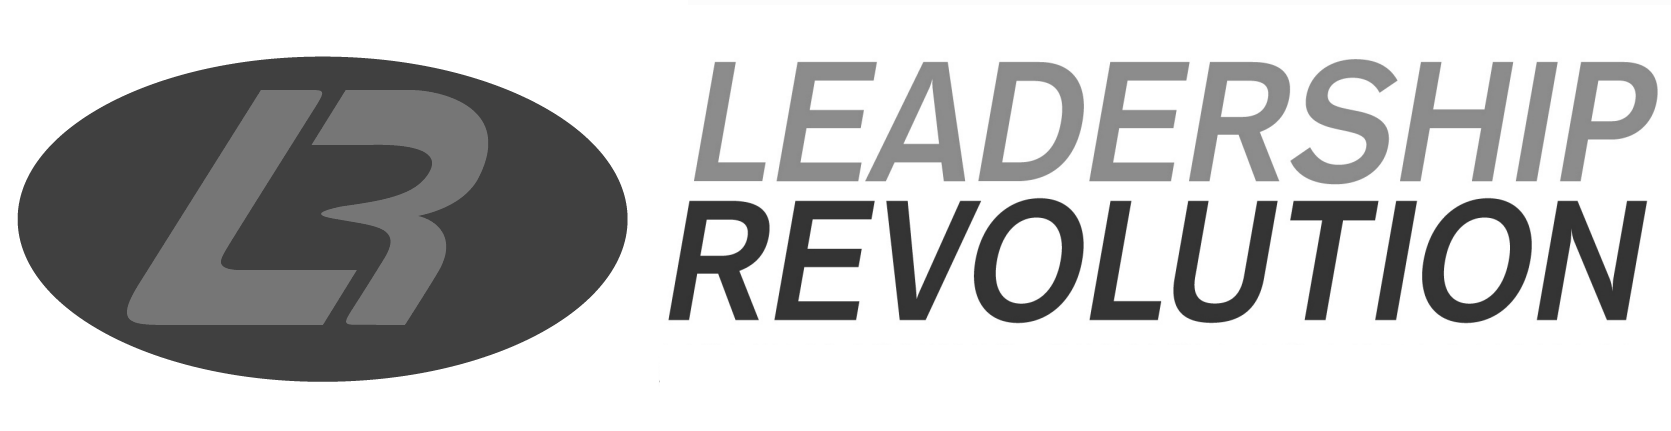 Leadership Revolution